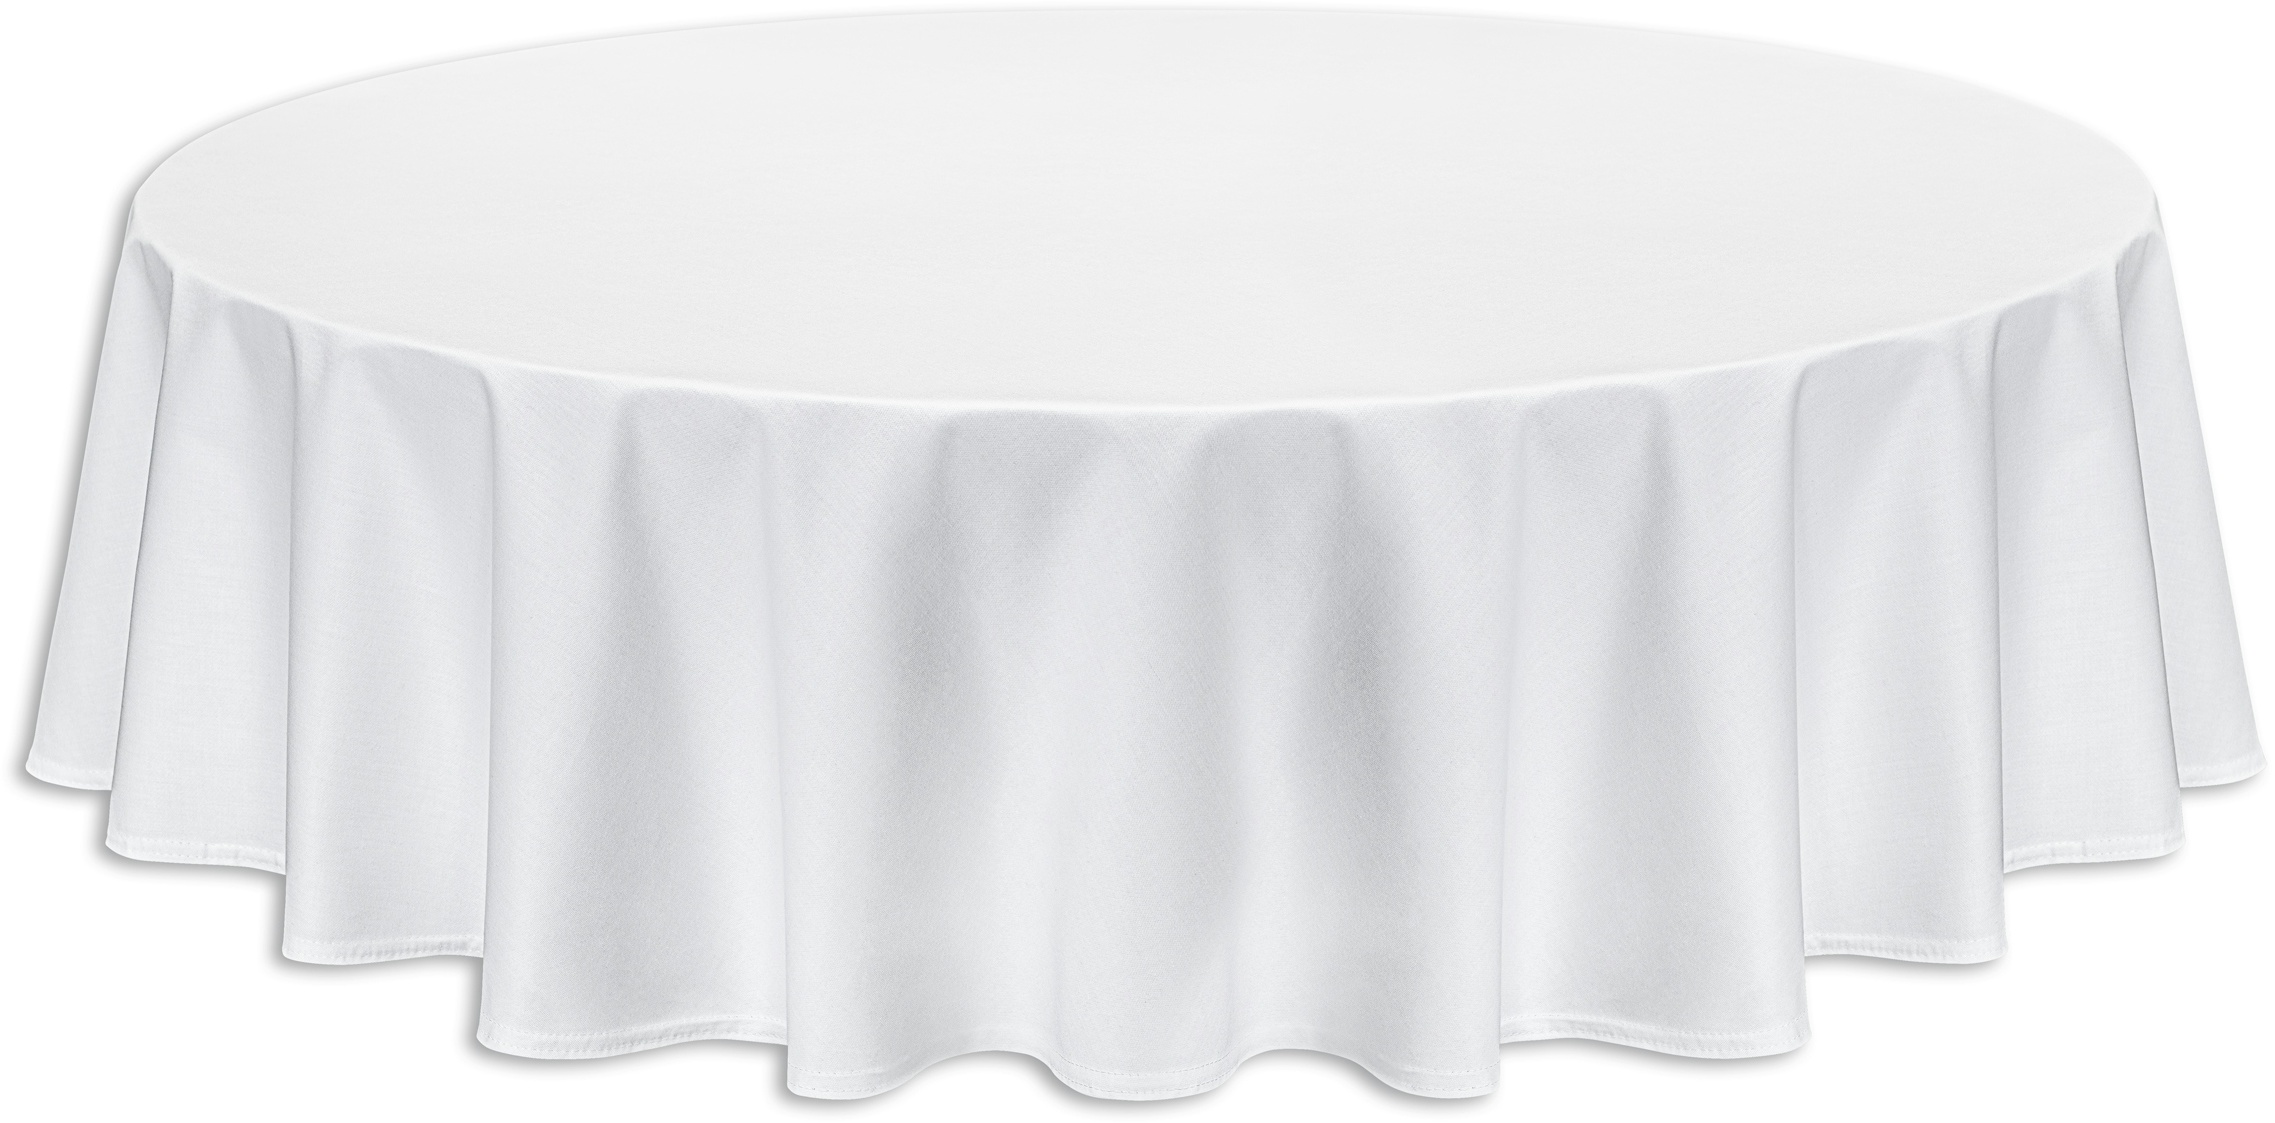 AURORA Tischdecke rund weiß 160cm Durchmesser 100% Baumwolle Vollzwirn Damast